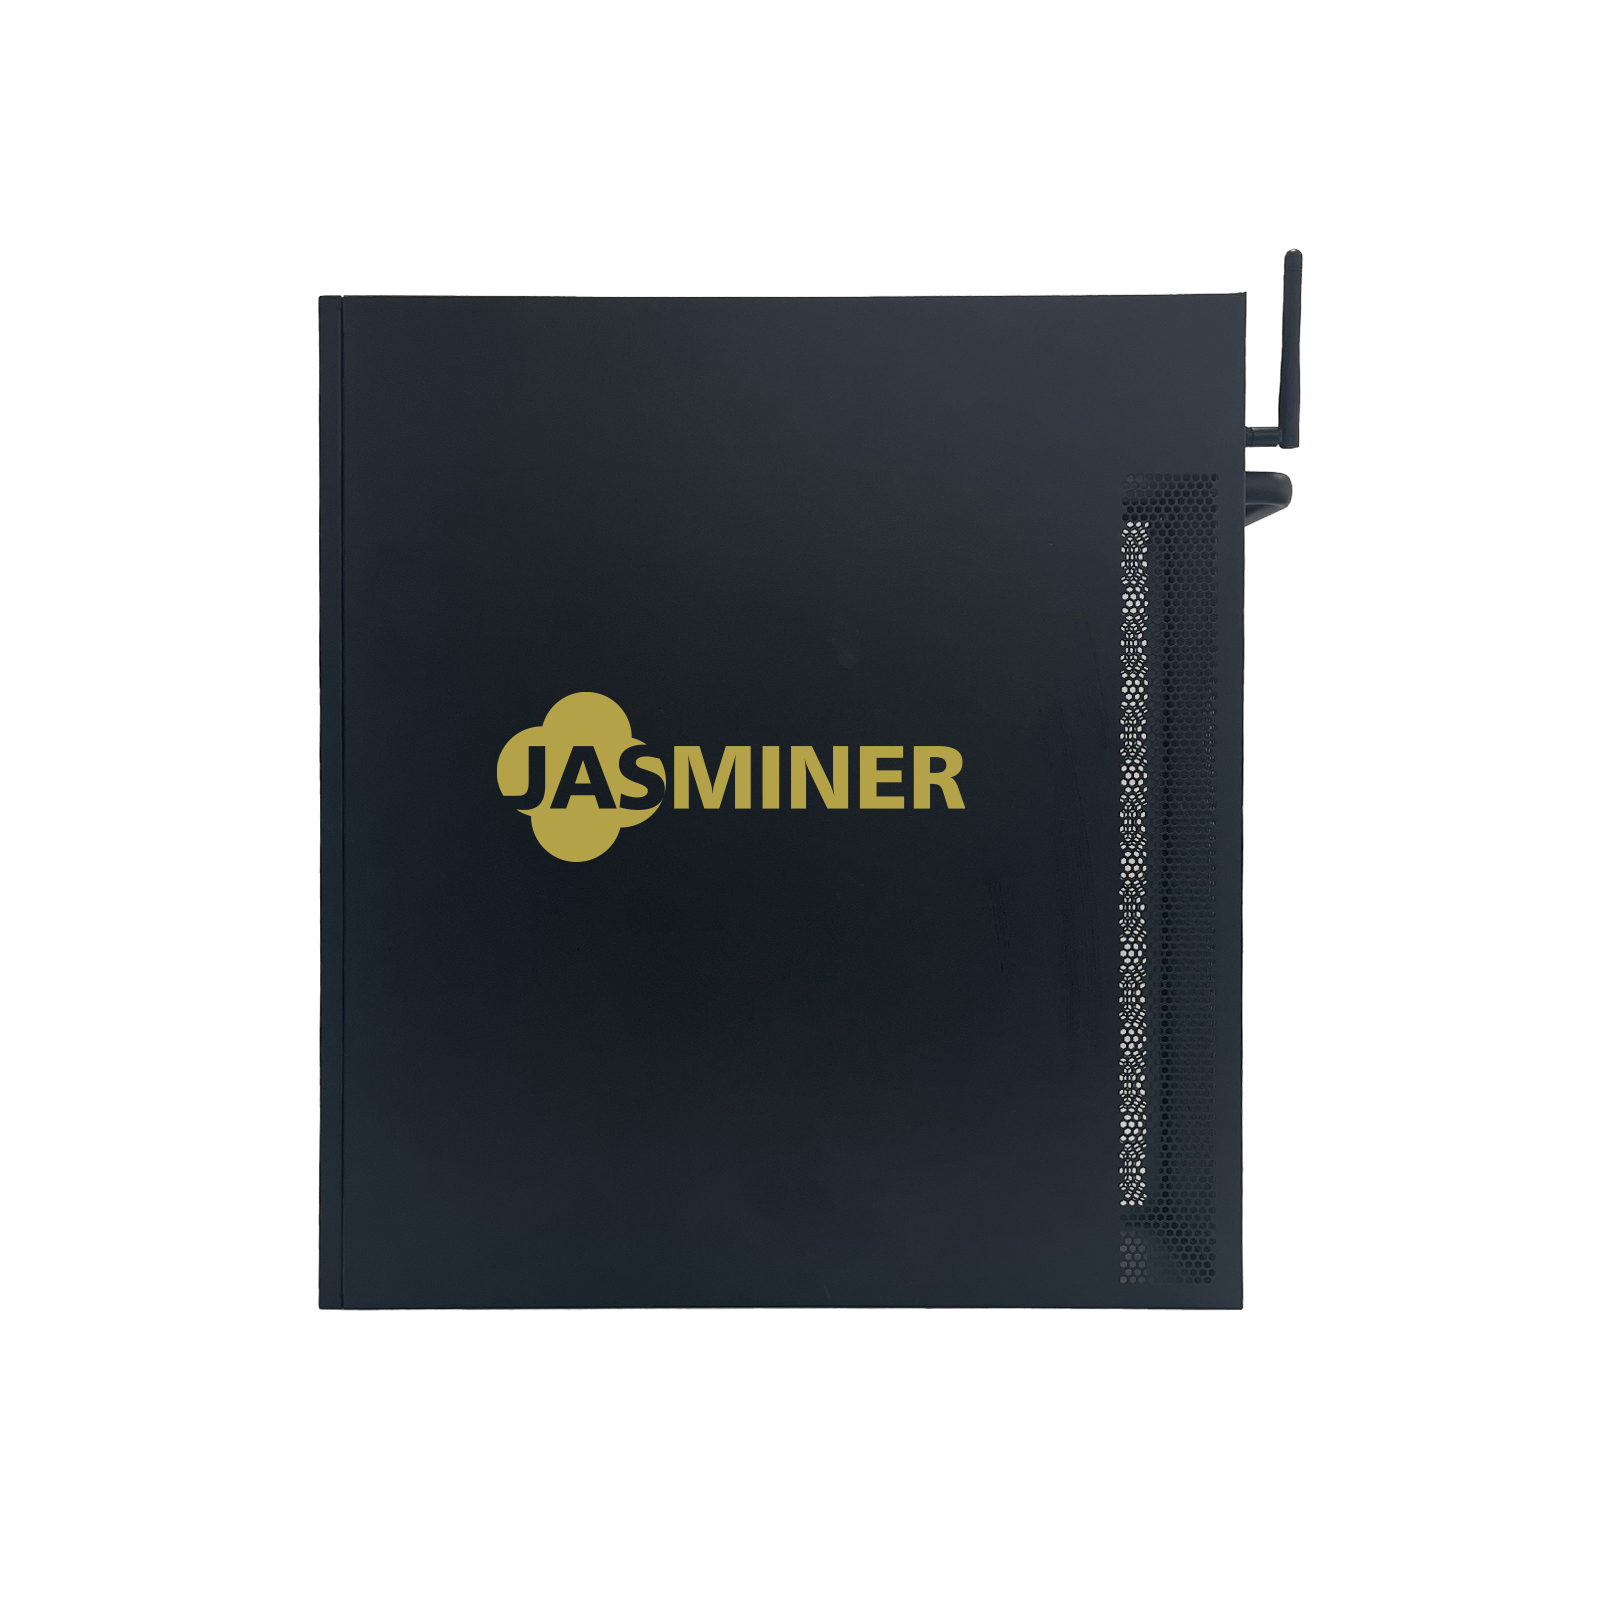 <tc>【New】 Mineur De Jasmin JASMINER X16-QE High throughput 3U quiet server Wi-Fi (1650MH/RAM 6GB))</tc>